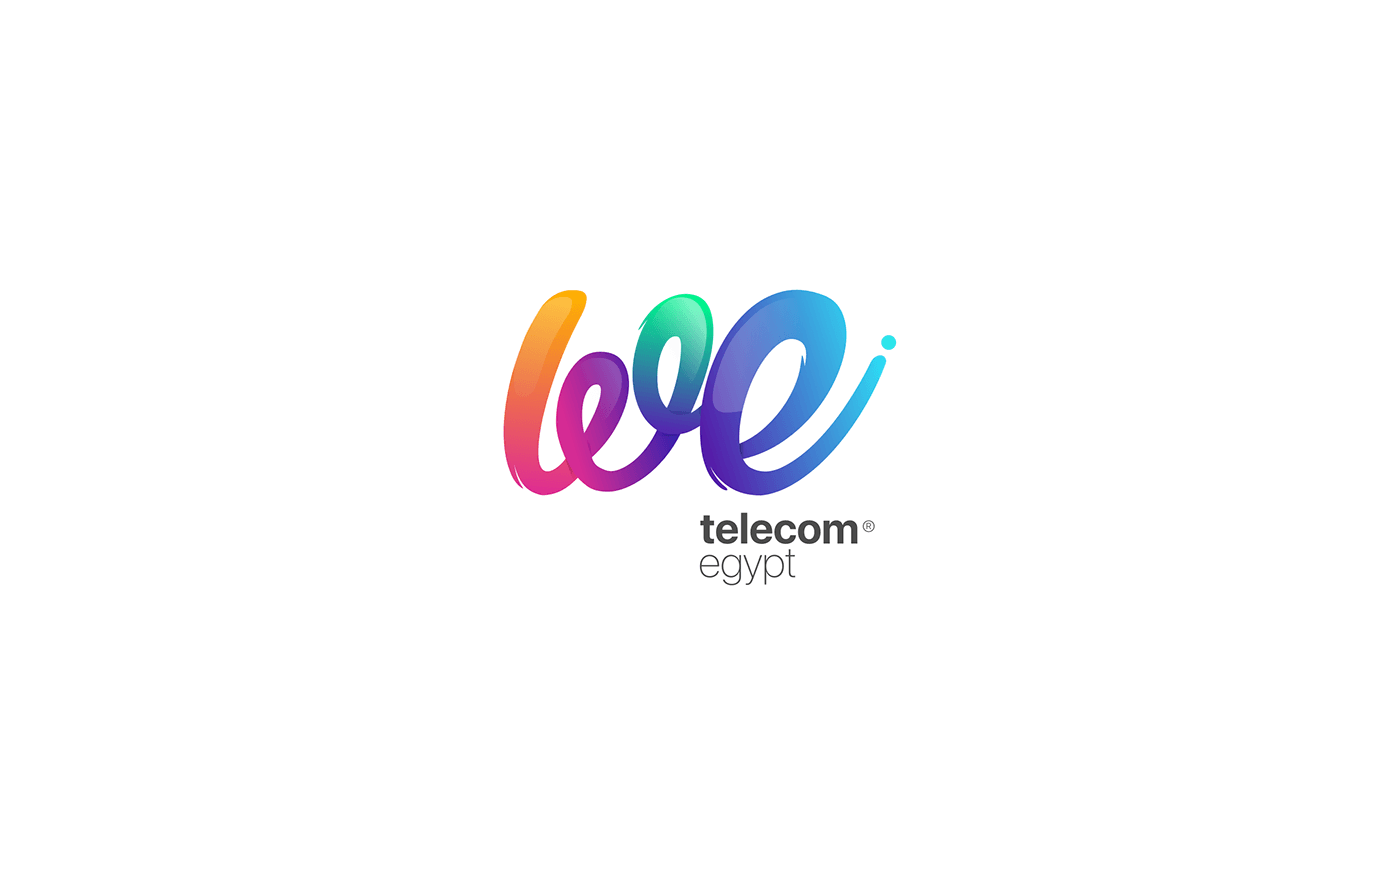 Egypt Logo - WE - Telecom Egypt Branding Concept. on Behance